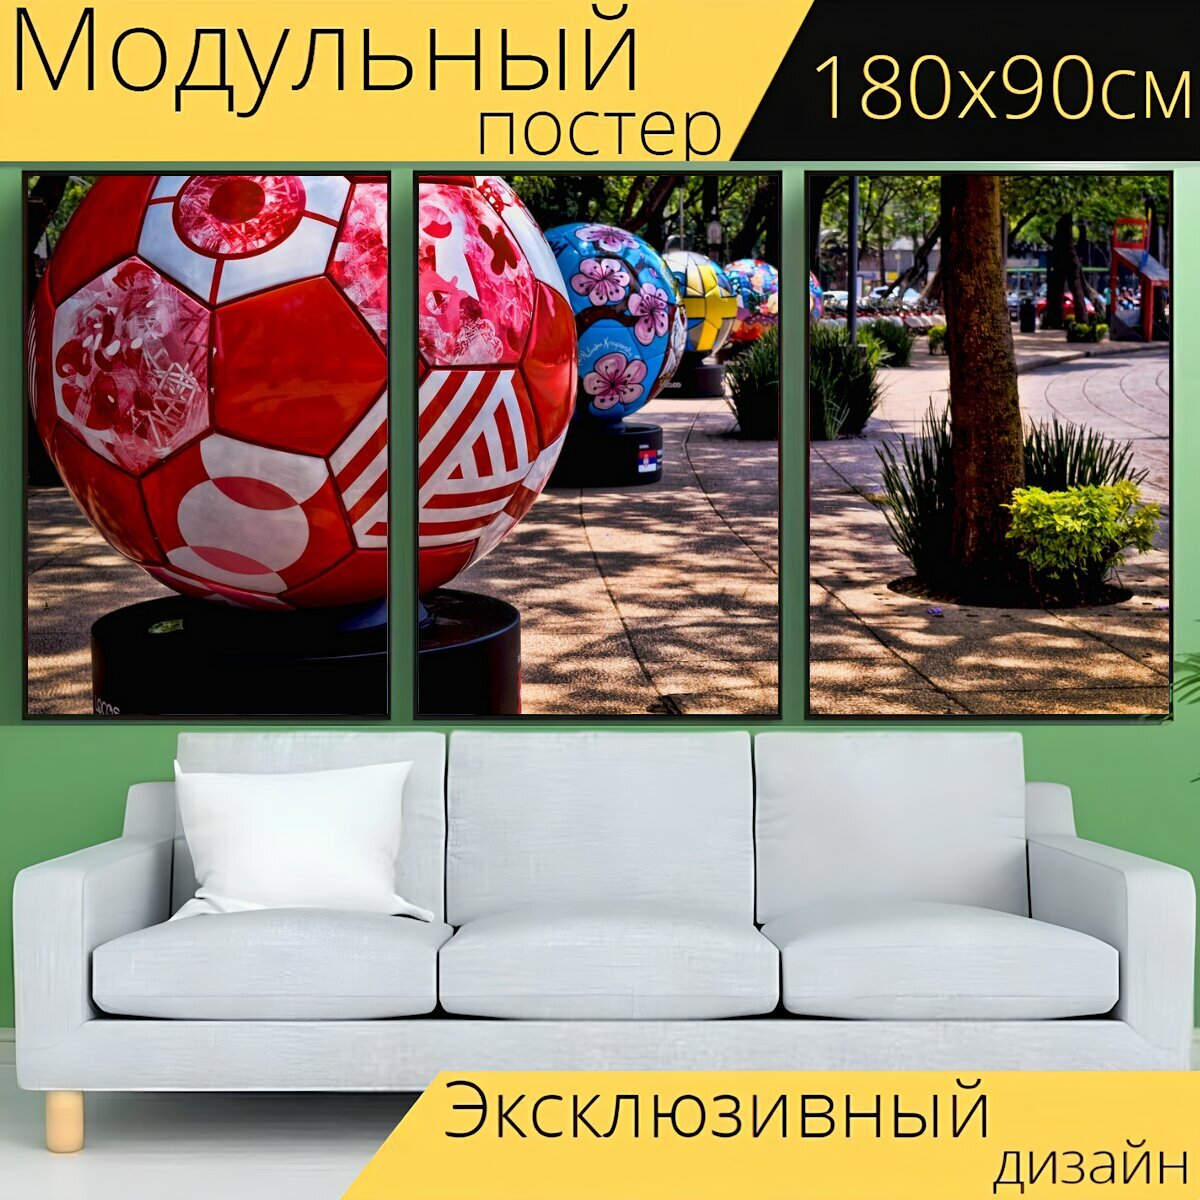 Модульный постер "Мяч, туризм, мир" 180 x 90 см. для интерьера